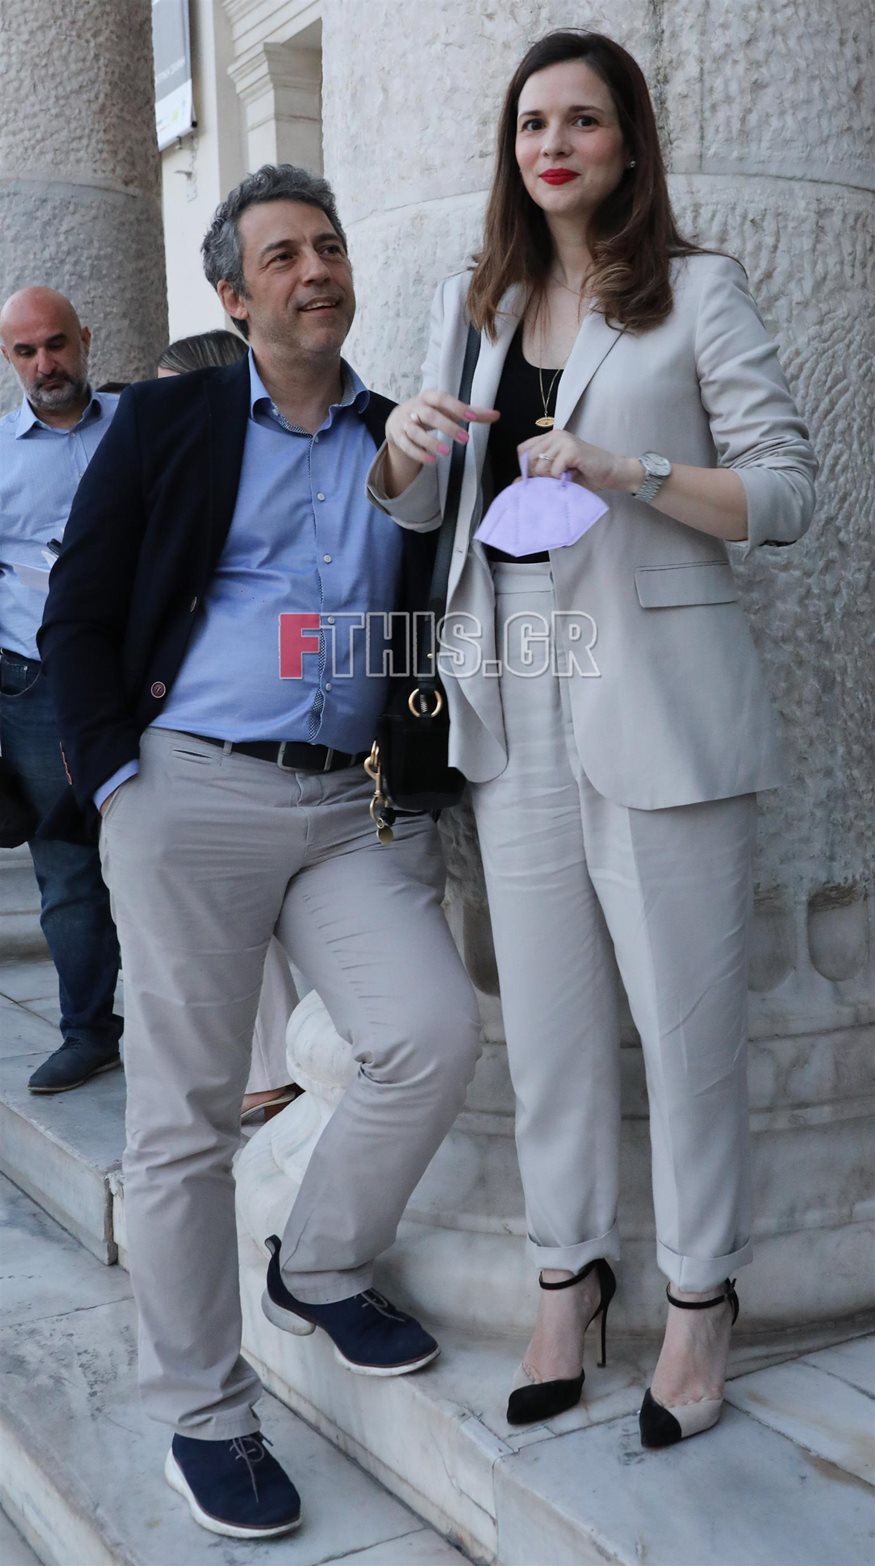 Ευγενία Δημητροπούλου: Σπάνια δημόσια εμφάνιση με τον σύζυγό της, Στέλιο Βλατάκη (Φωτογραφίες)